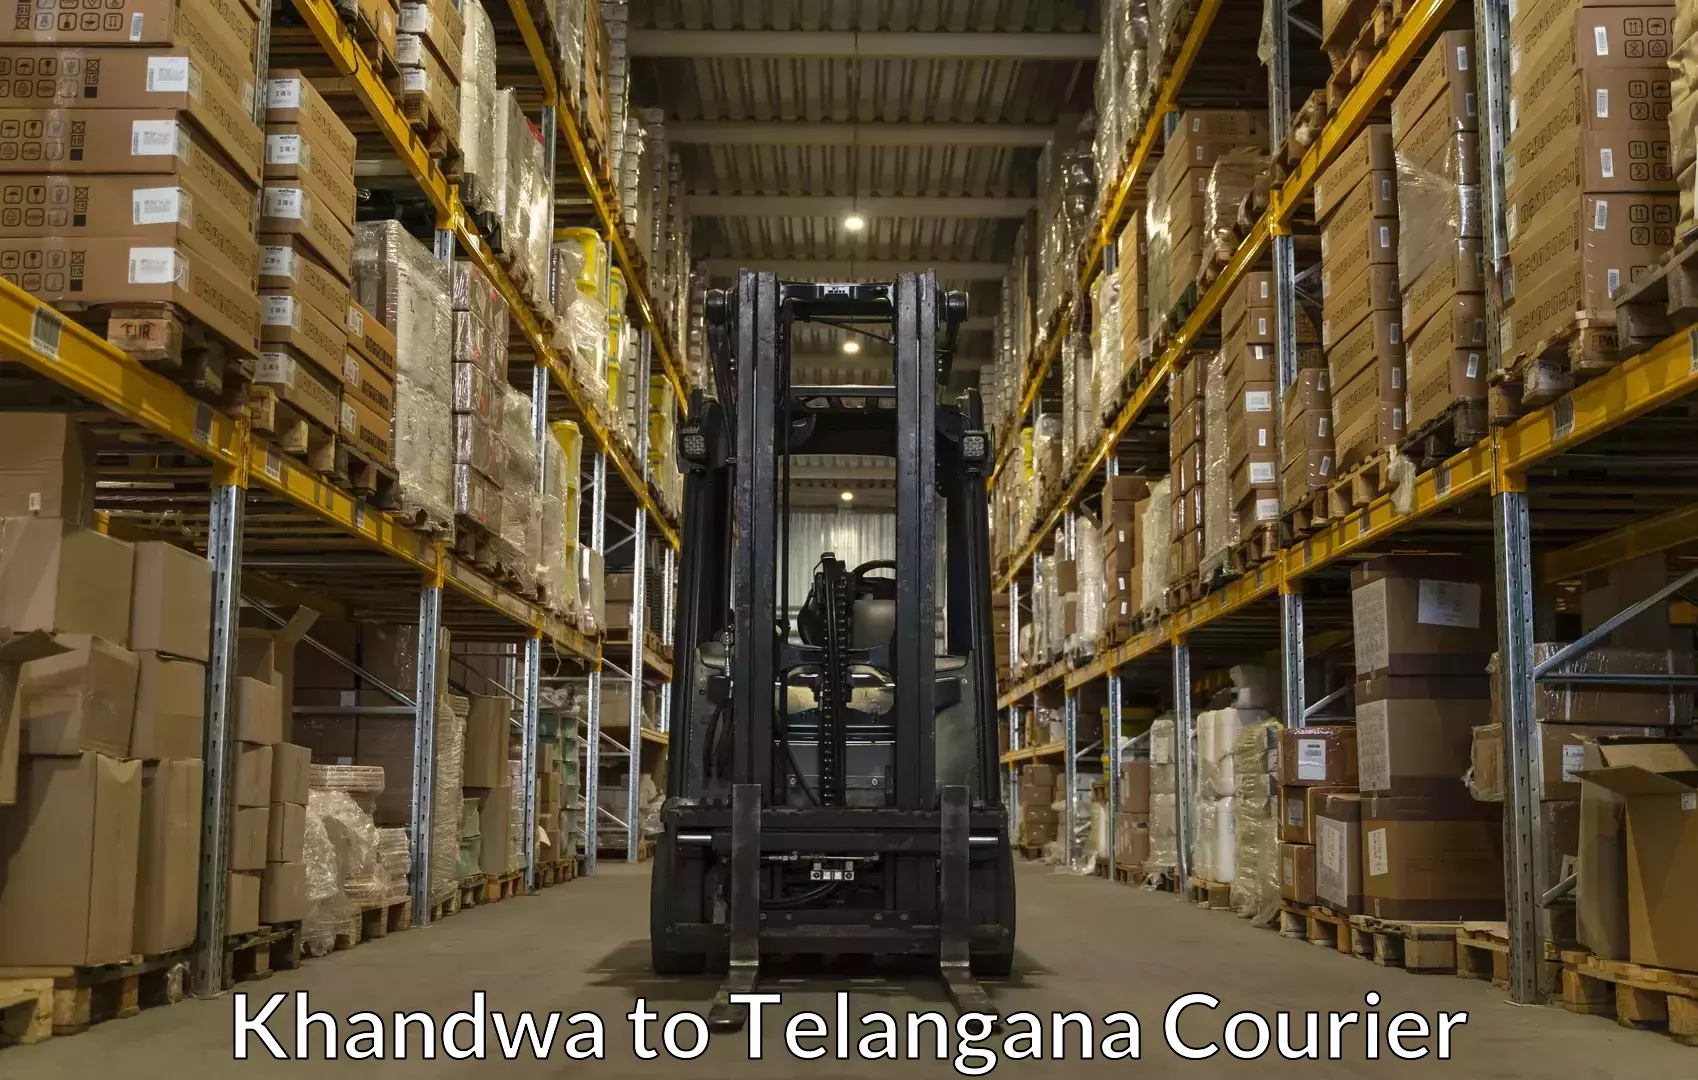 Luggage transport company Khandwa to Telangana